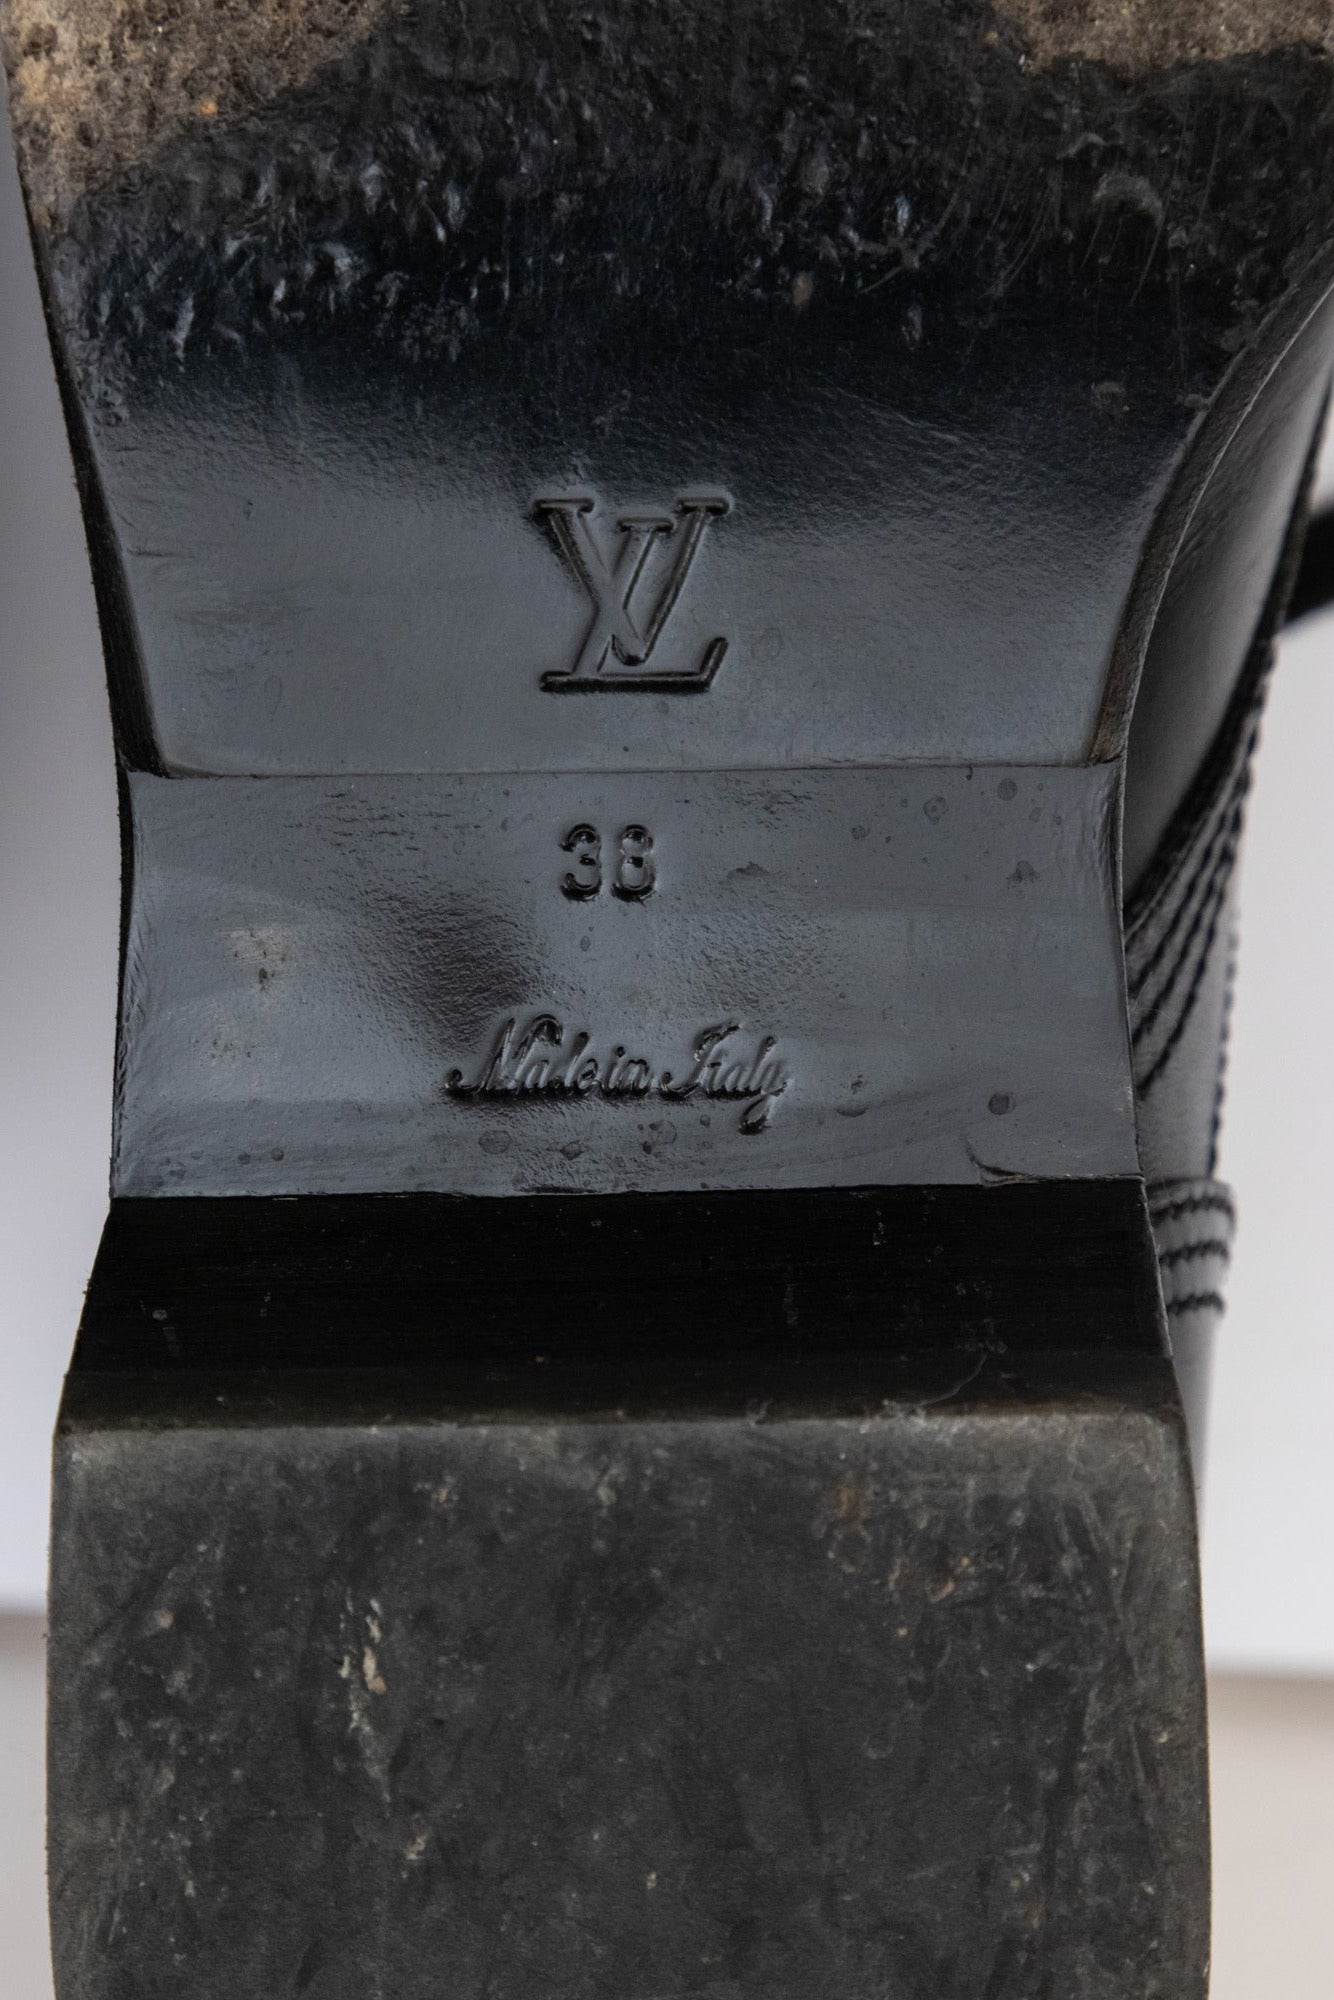 LOUIS VUITTON Chaussures Metropolis Toile Monogram | Bottines en cuir noires